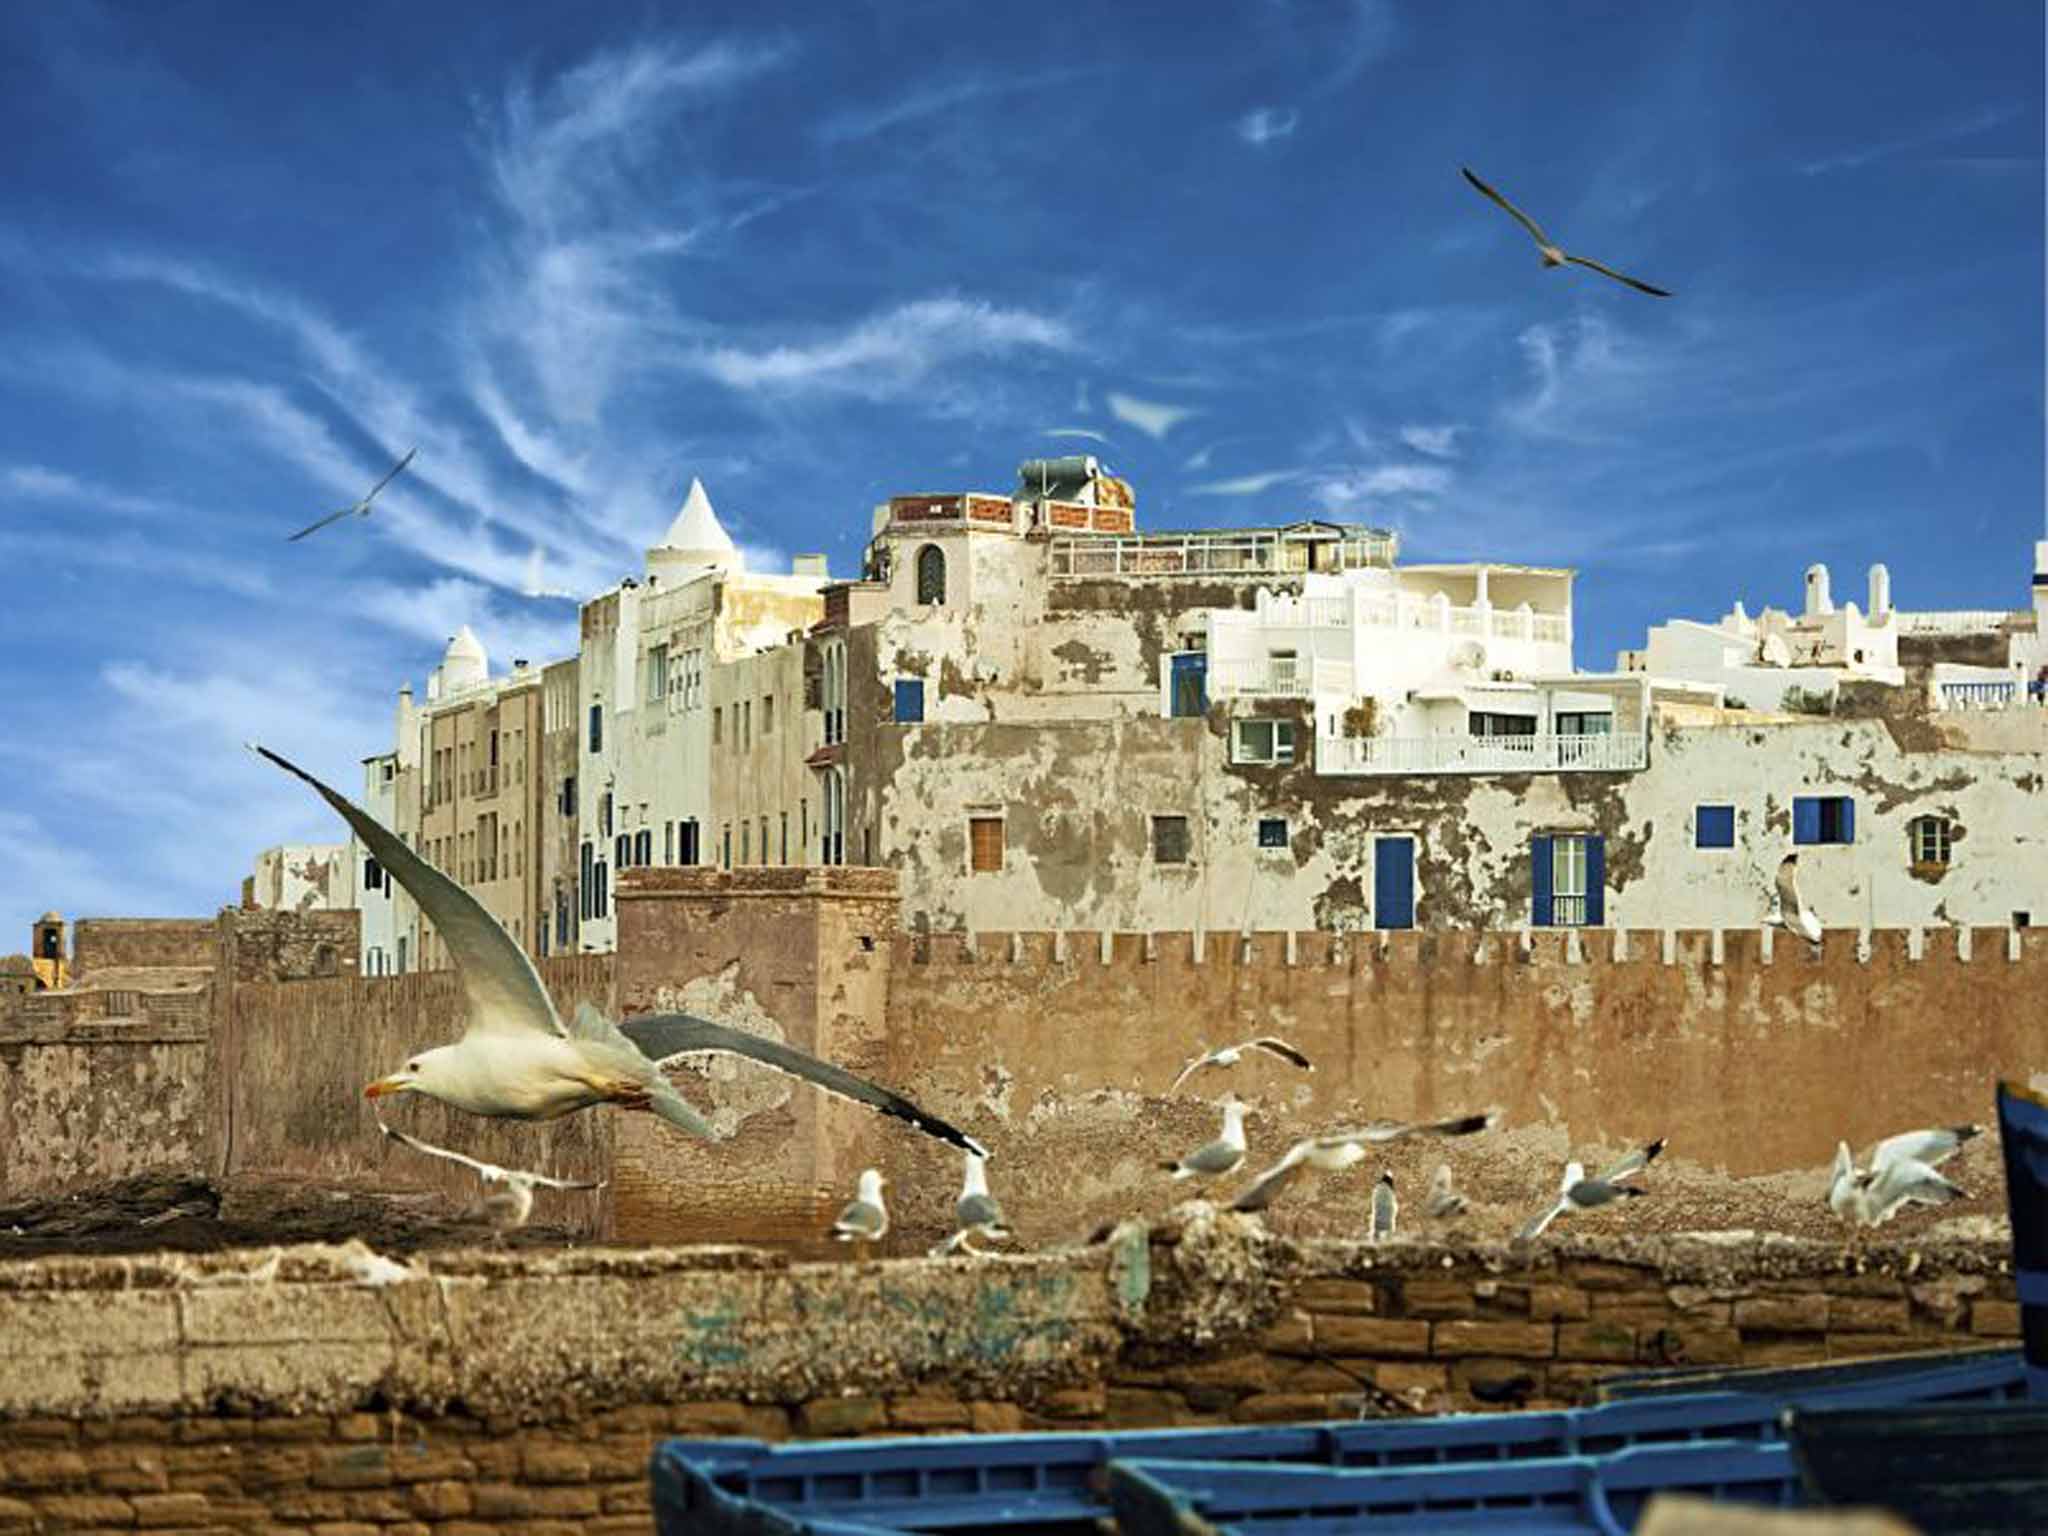 Essaouira has a laidback vibe